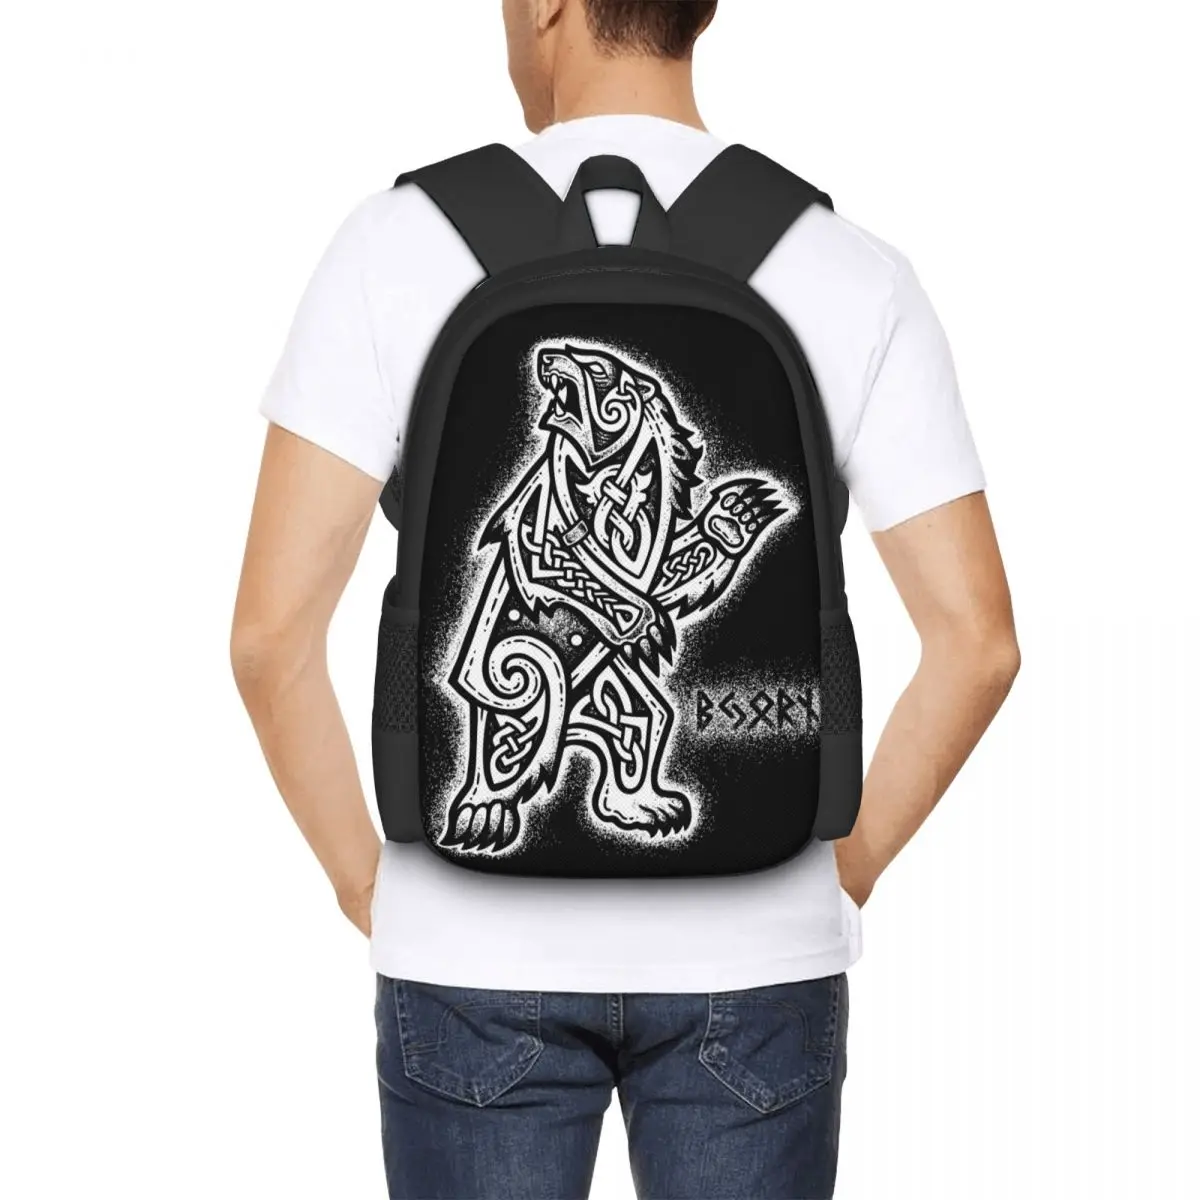 Bjorn The Bear Backpack for Girls Boys Travel RucksackBackpacks for Teenage school bag